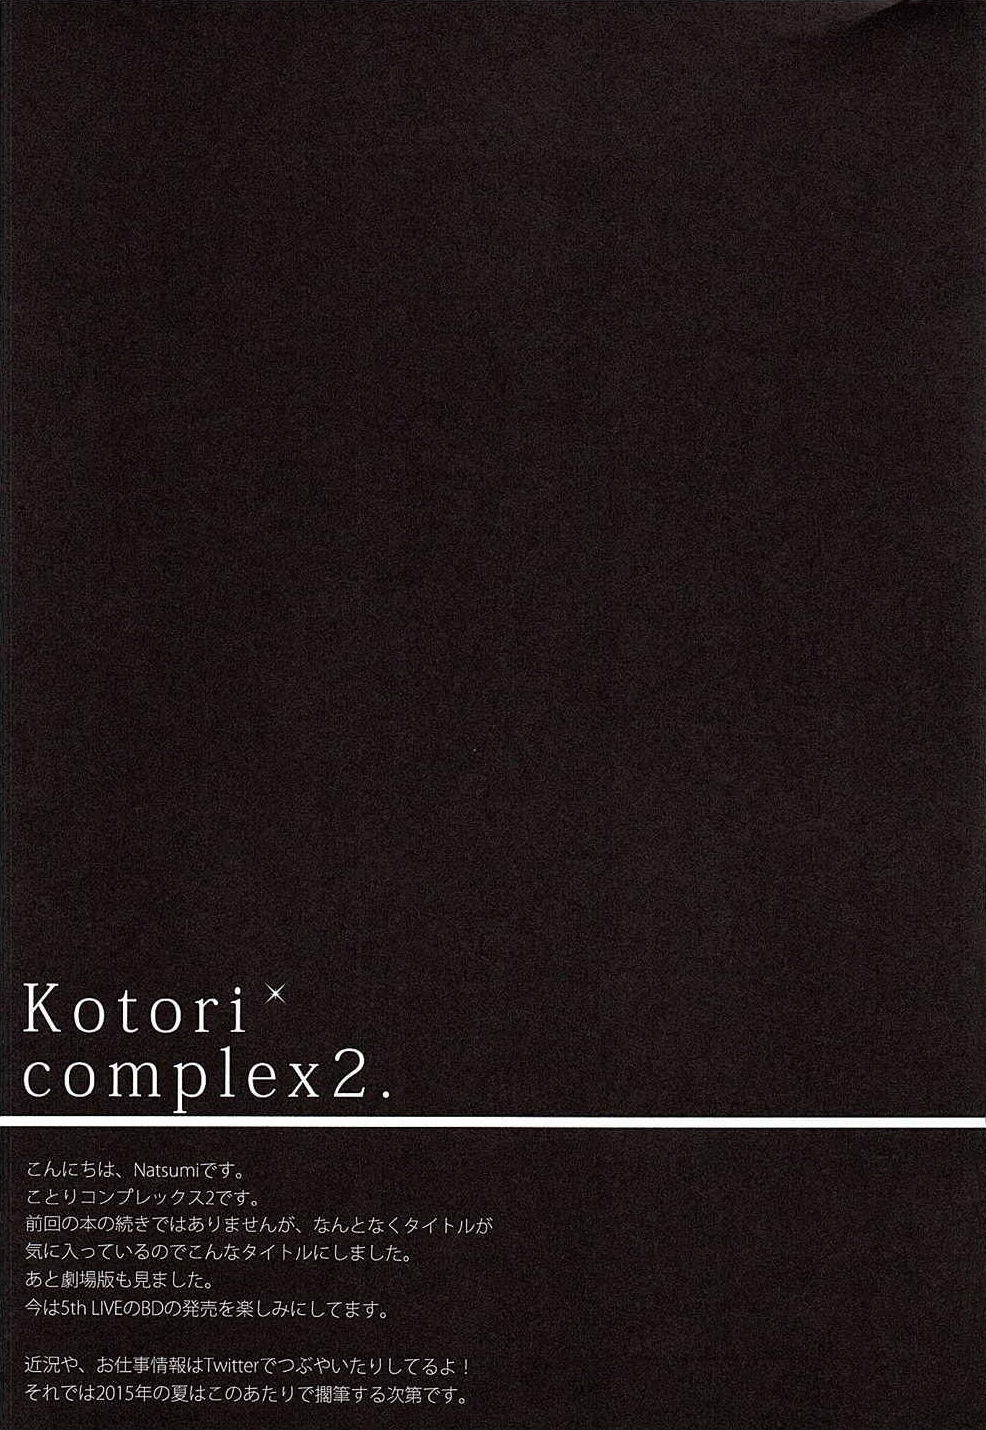 (C88) [IK.projectear (natsumi)] Kotori Complex2 (ラブライブ!) [英訳]